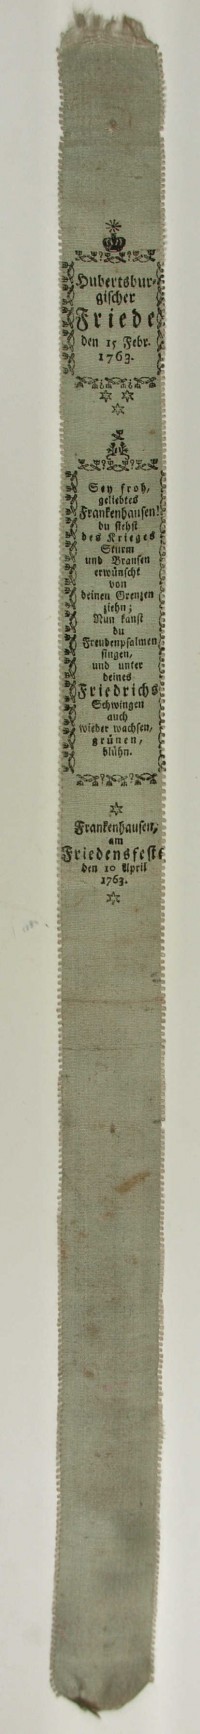 Vivatband "Hubertsburgischer Friede den 15. Febr. 1763"